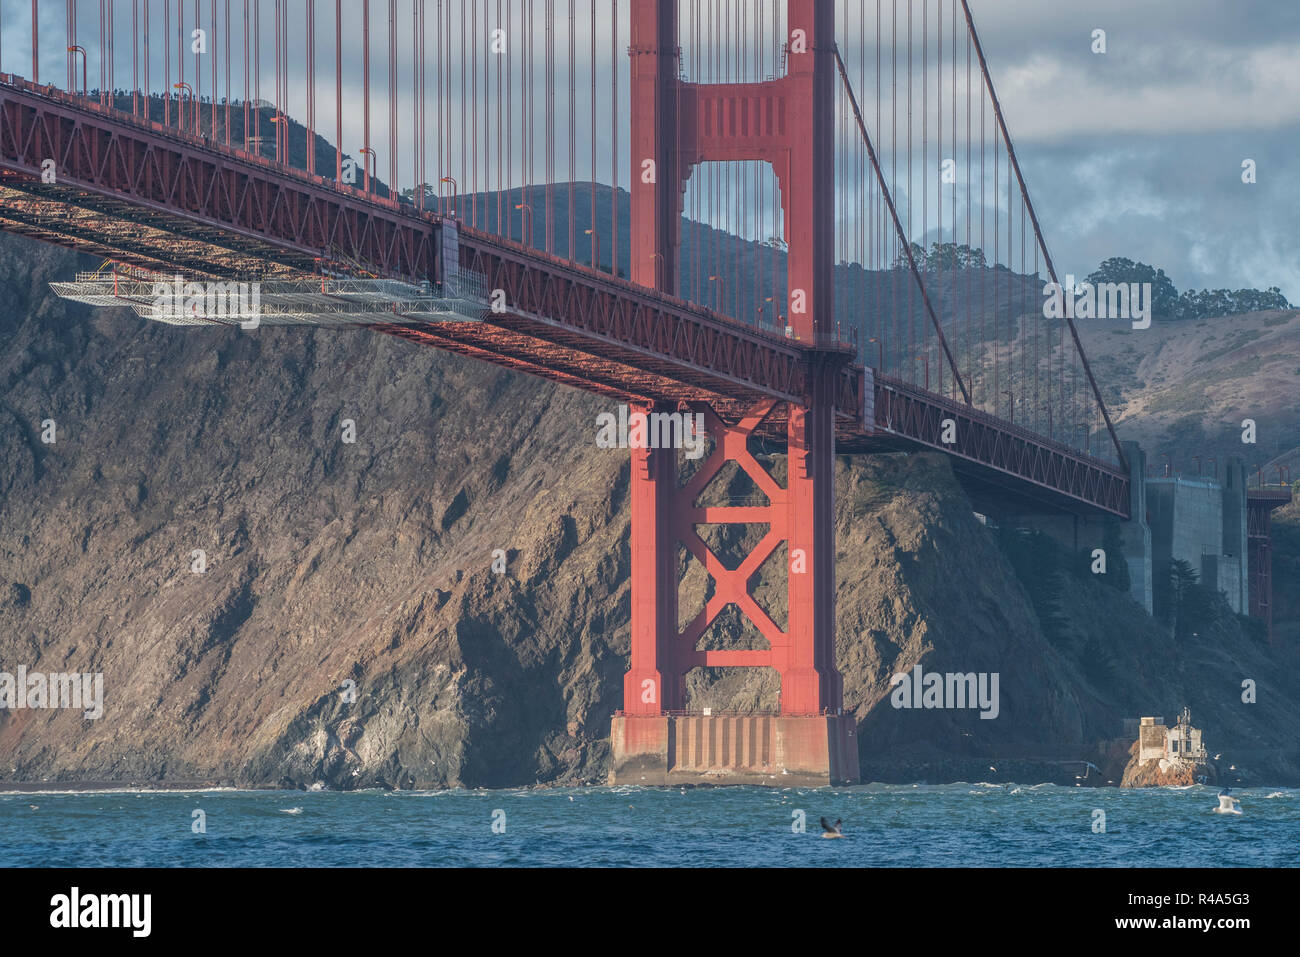 El puente Golden Gate, visto desde la bahía, andamios es visible por debajo como mantenimiento del puente está en marcha. Foto de stock